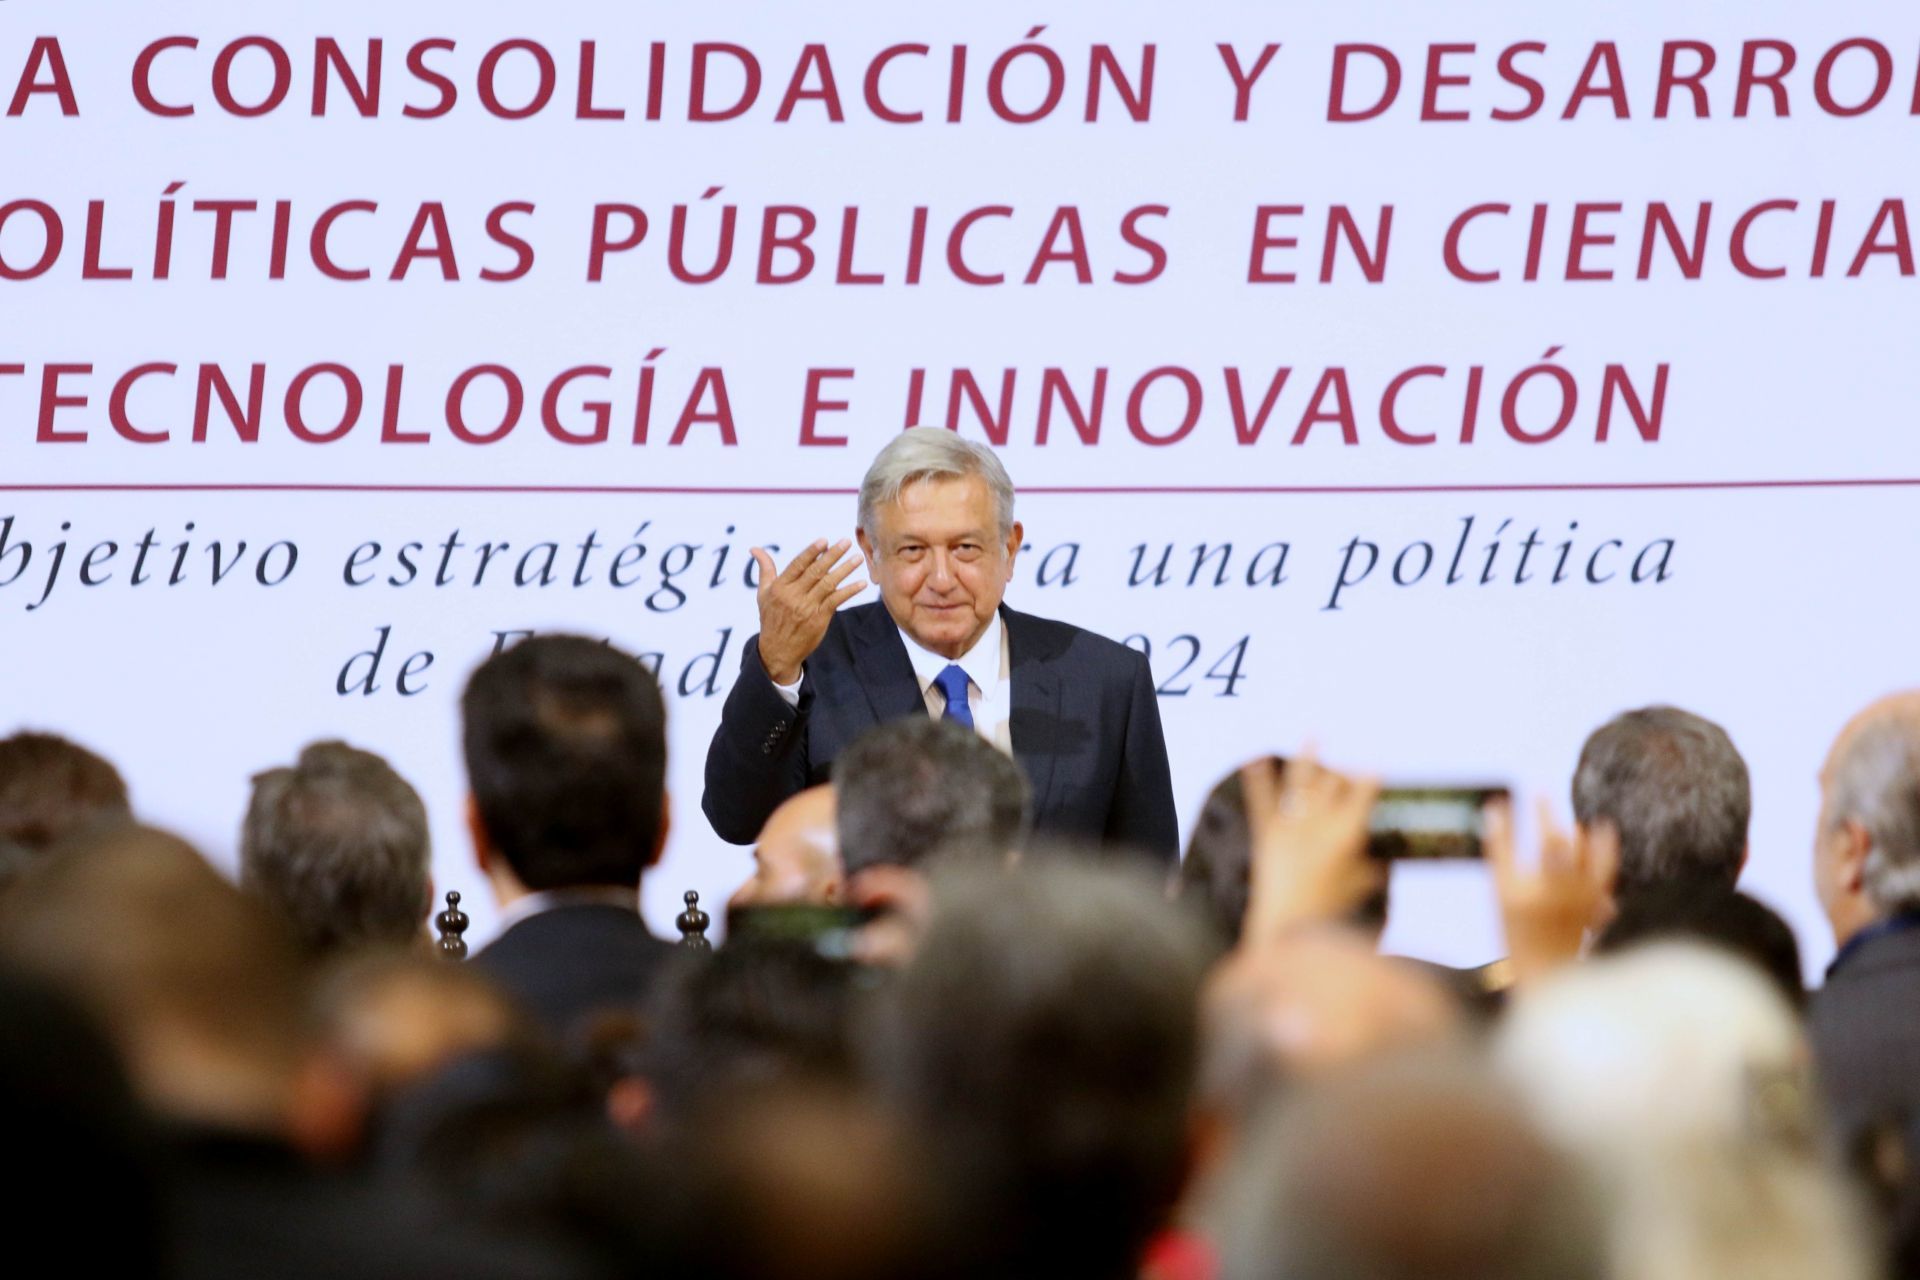 AMLO se convirtió en el primer presidente de izquierda en tomar el poder en México

FOTO: SAÚL LÓPEZ /CUARTOSCURO.COM